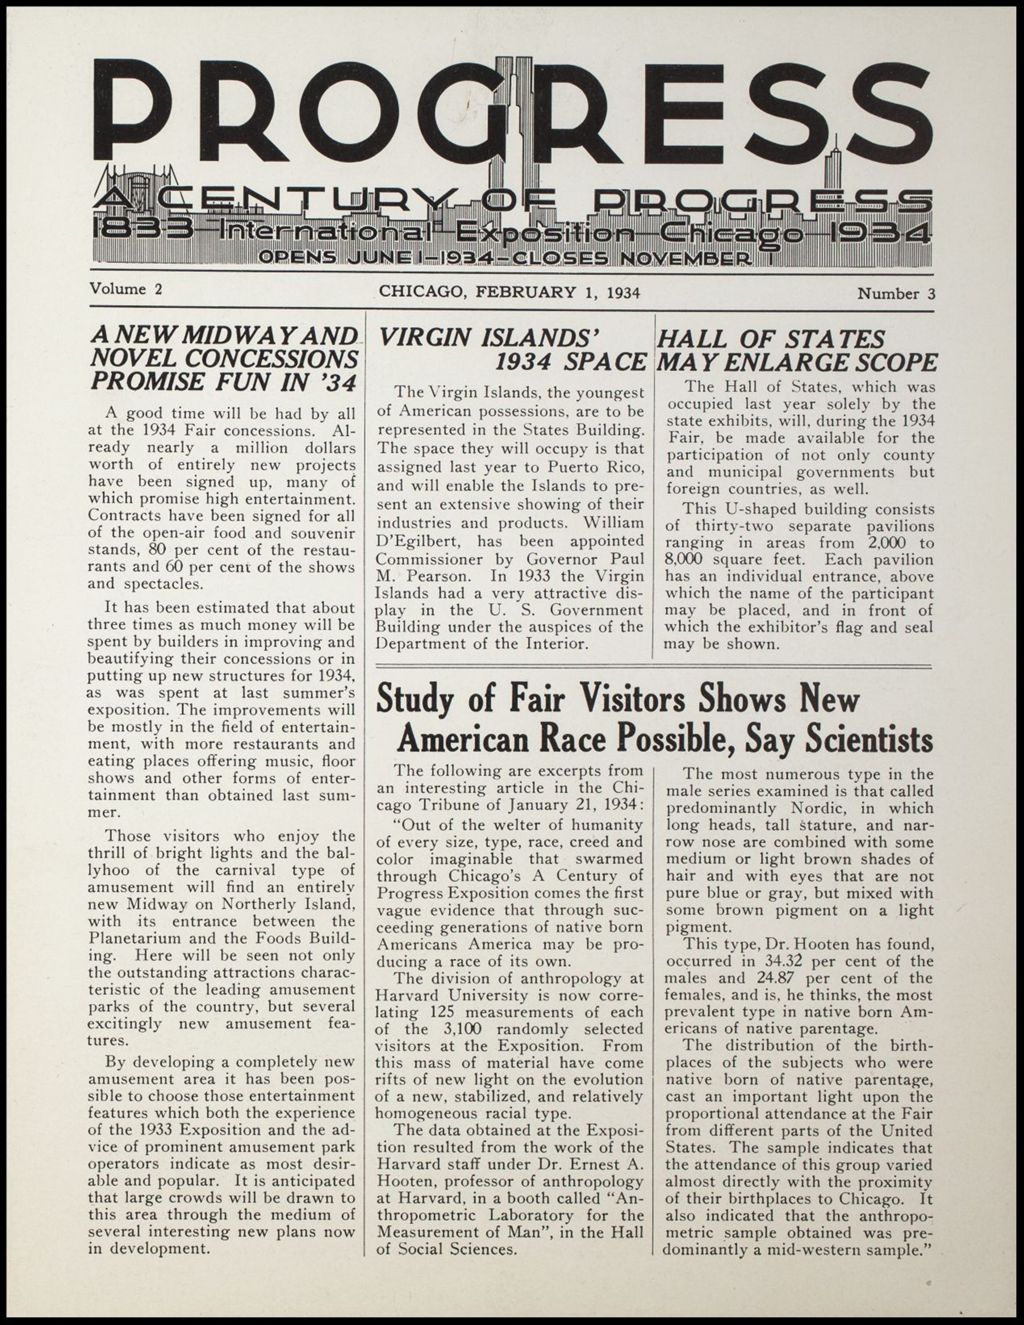 Progress, vol. 2, no. 3, February 1, 1934